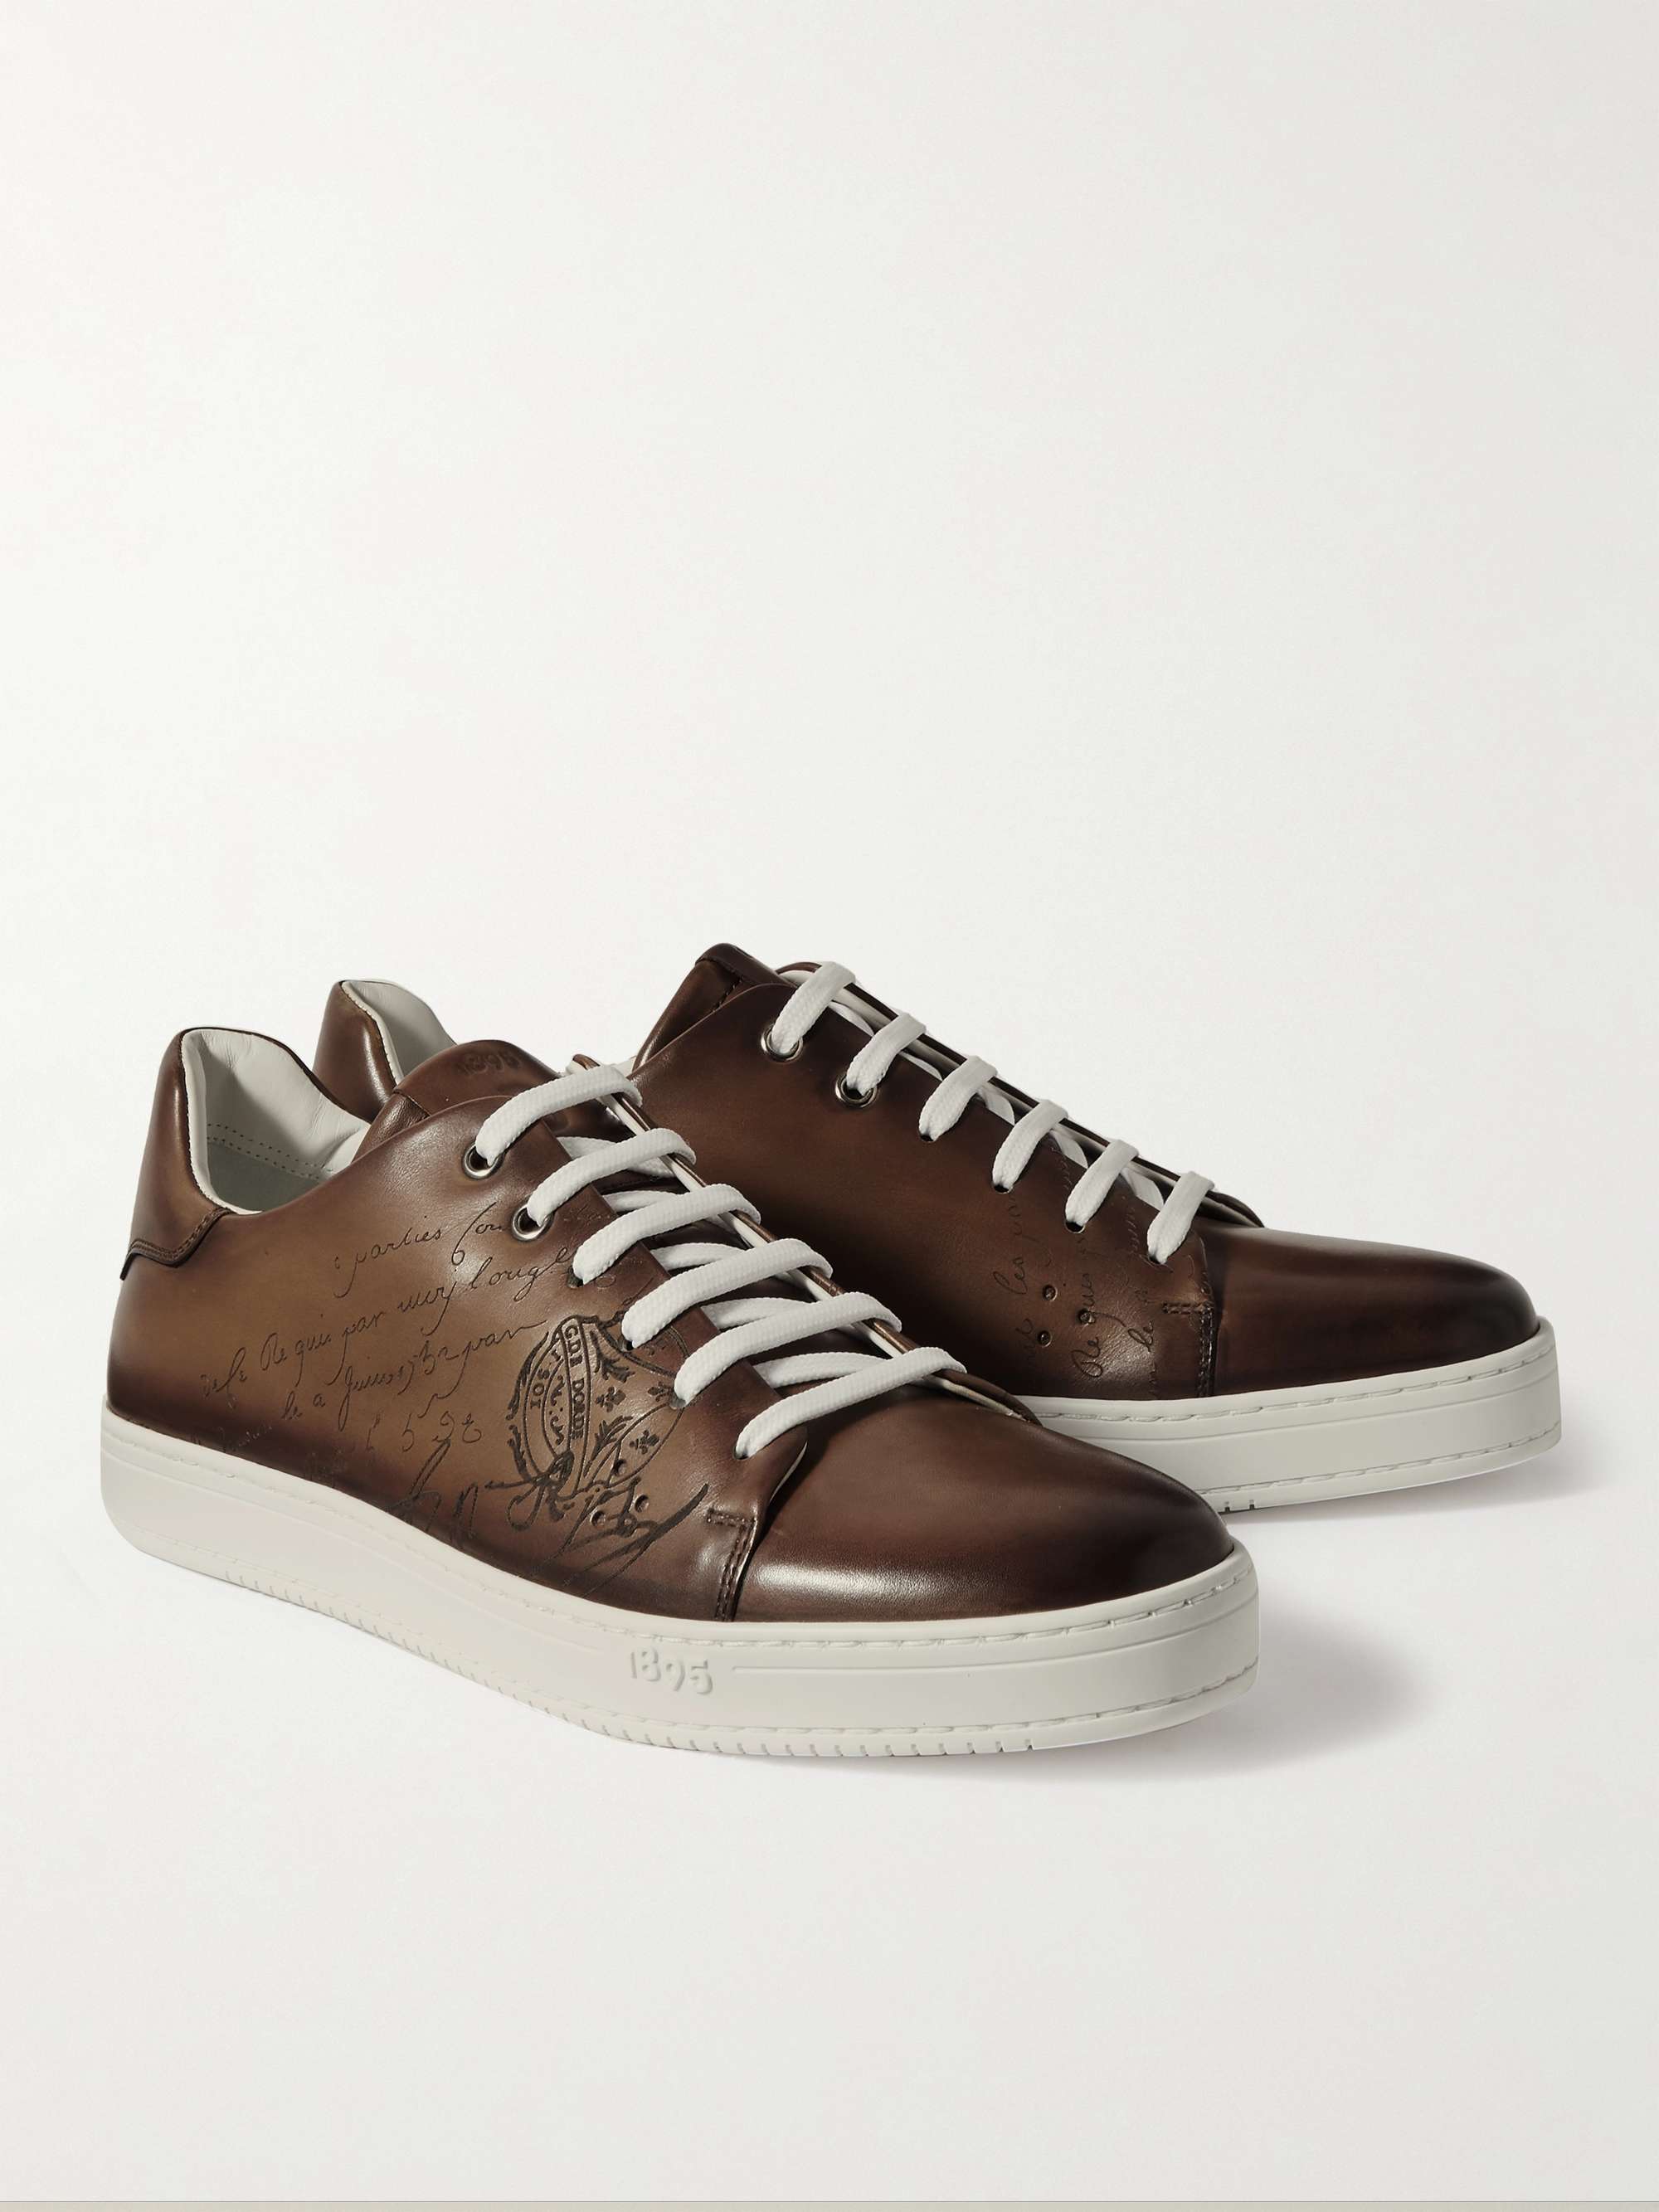 BERLUTI Scritto Venezia Leather Sneakers for Men | MR PORTER